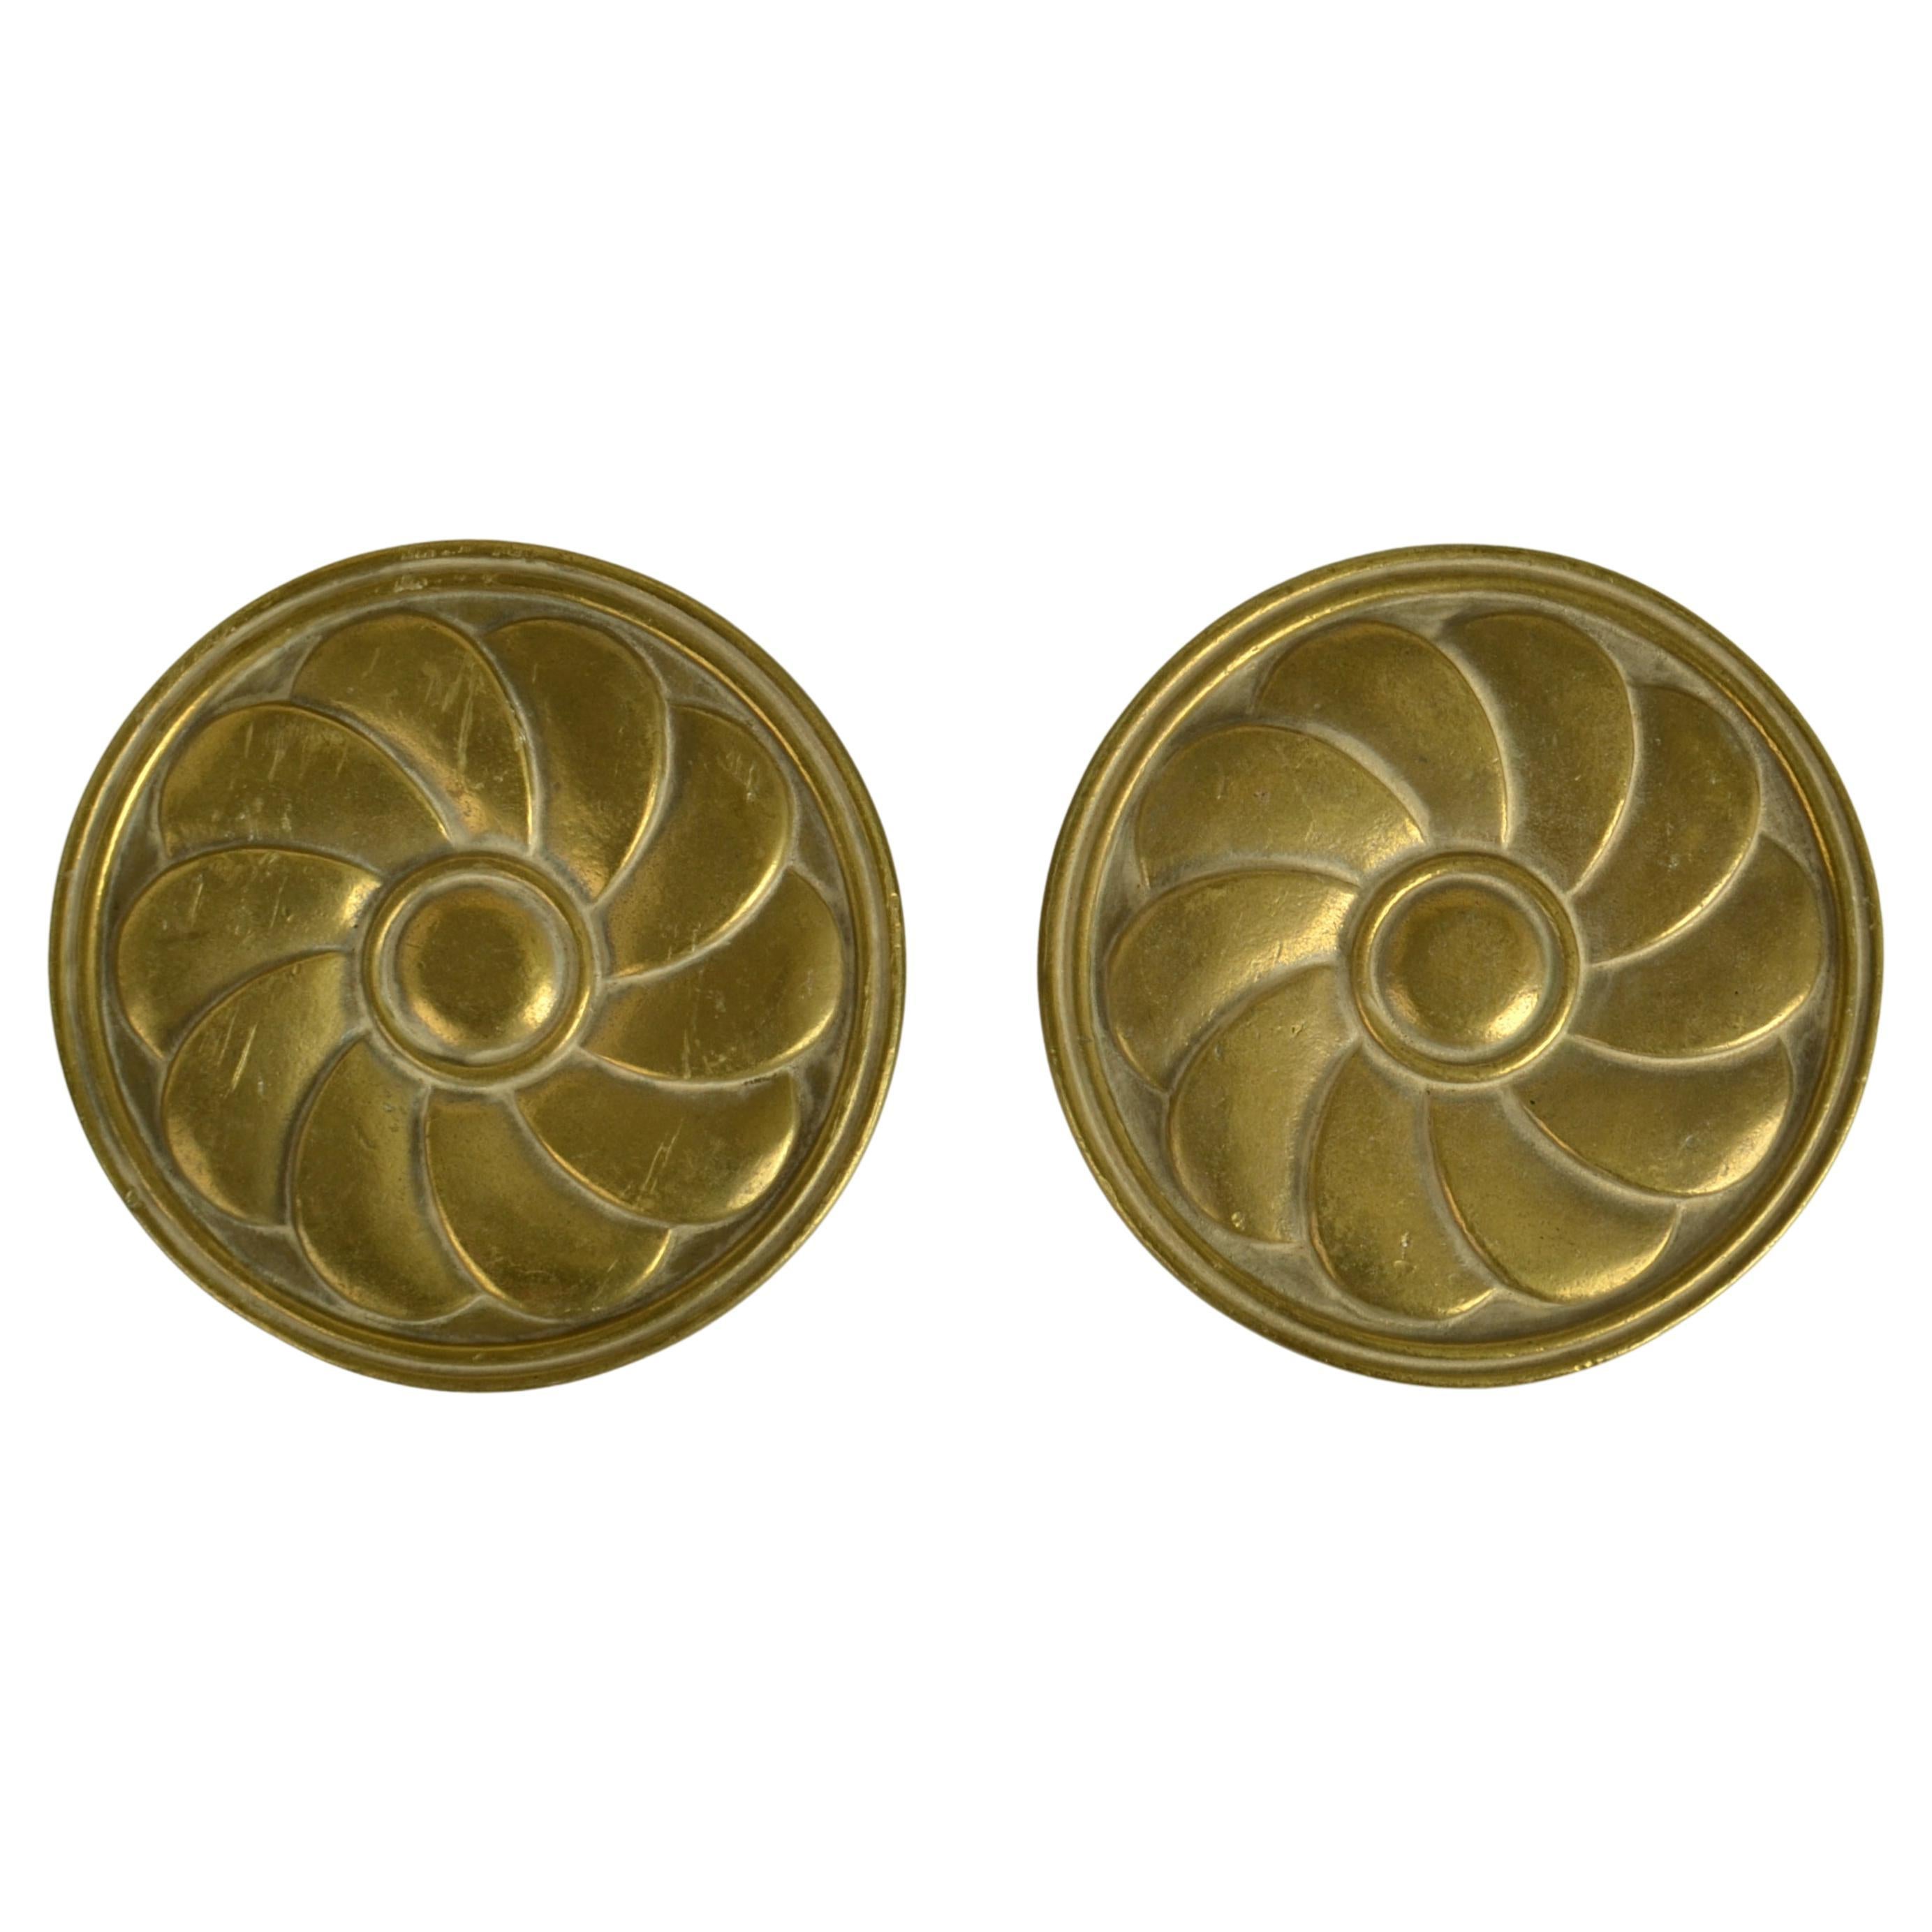 Pair of Round Bronze Push Pull Relief Door Handles with Flower Relief